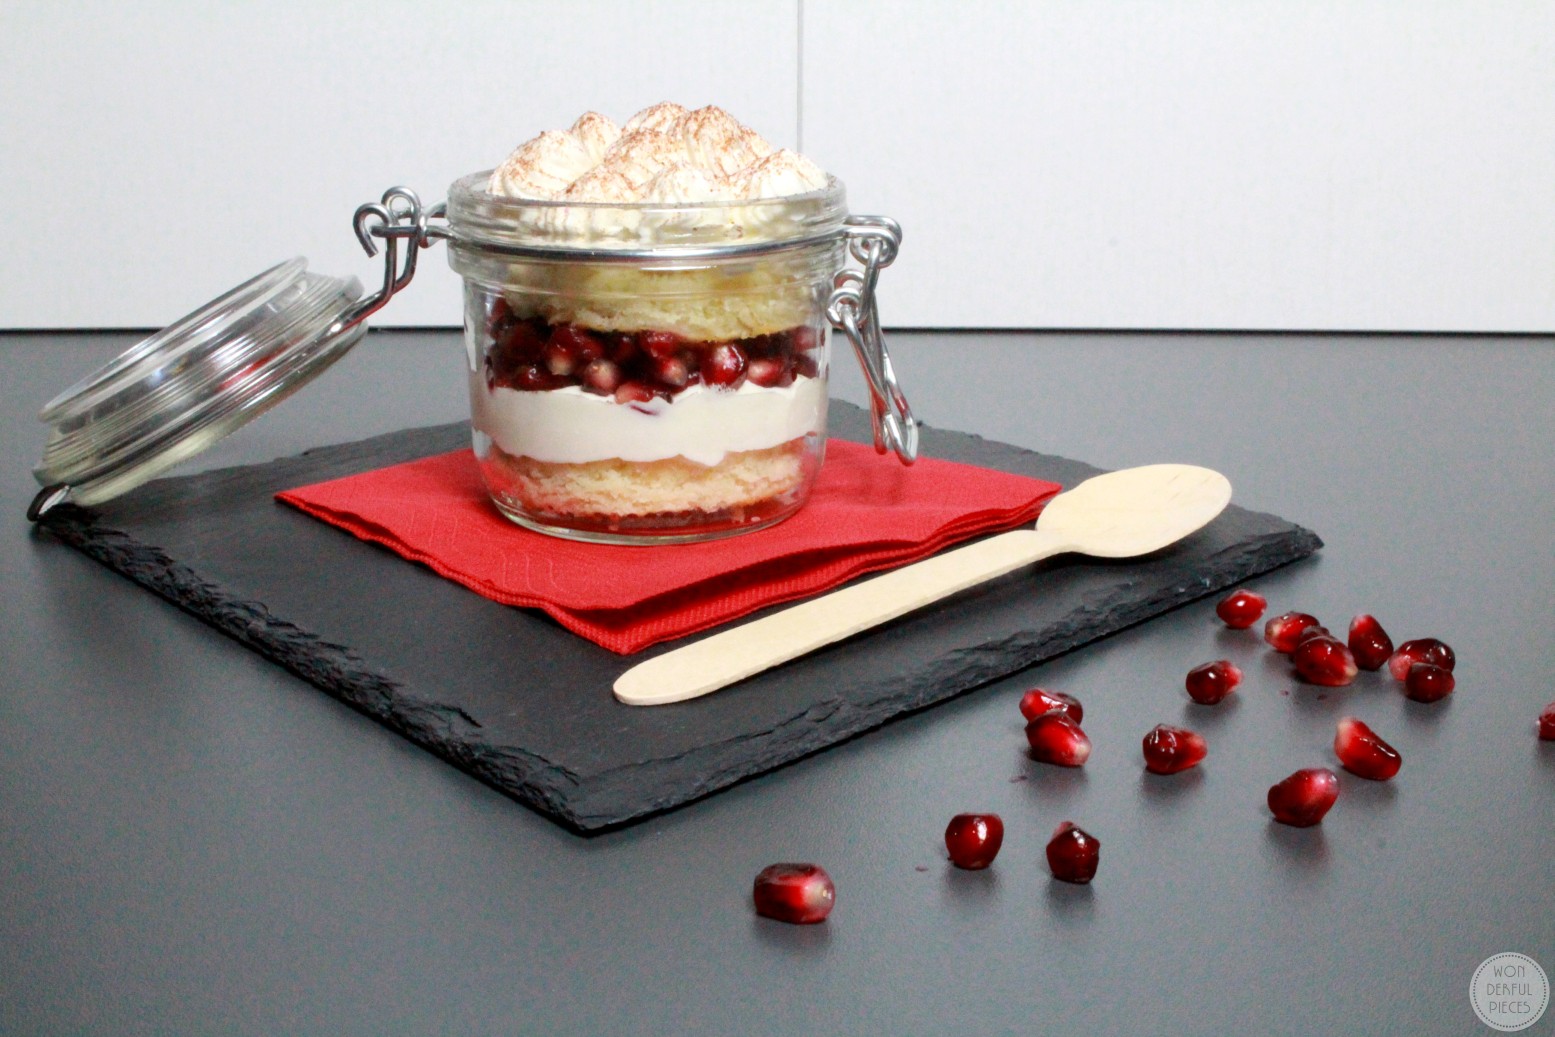 Schnelles Dessert mit Bisquit und Granatapfel - wonderful pieces